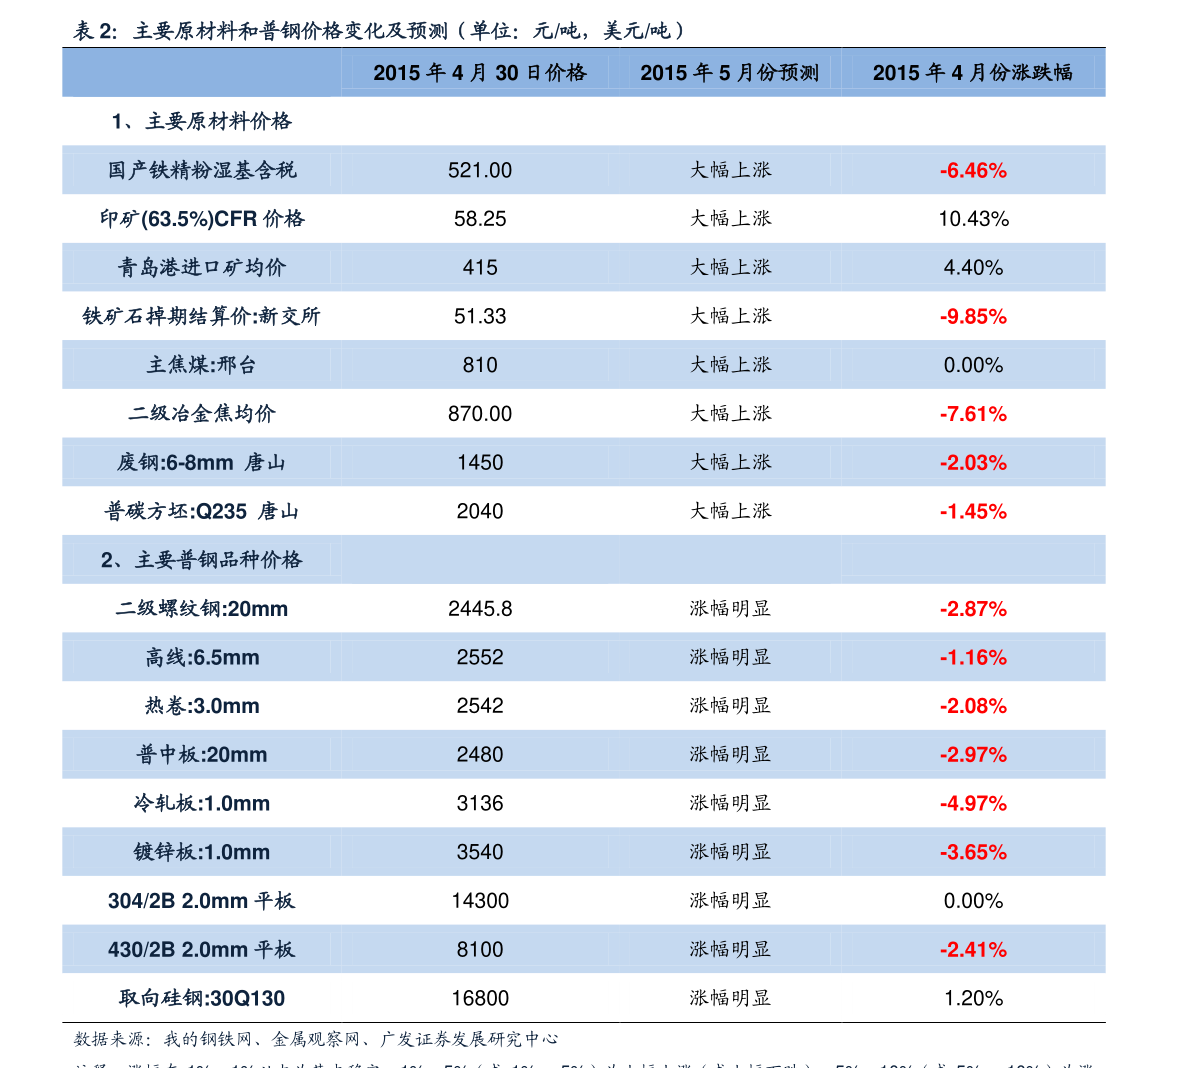 南京香烟价格表2023一览（南京香烟价格目录） - 择烟网